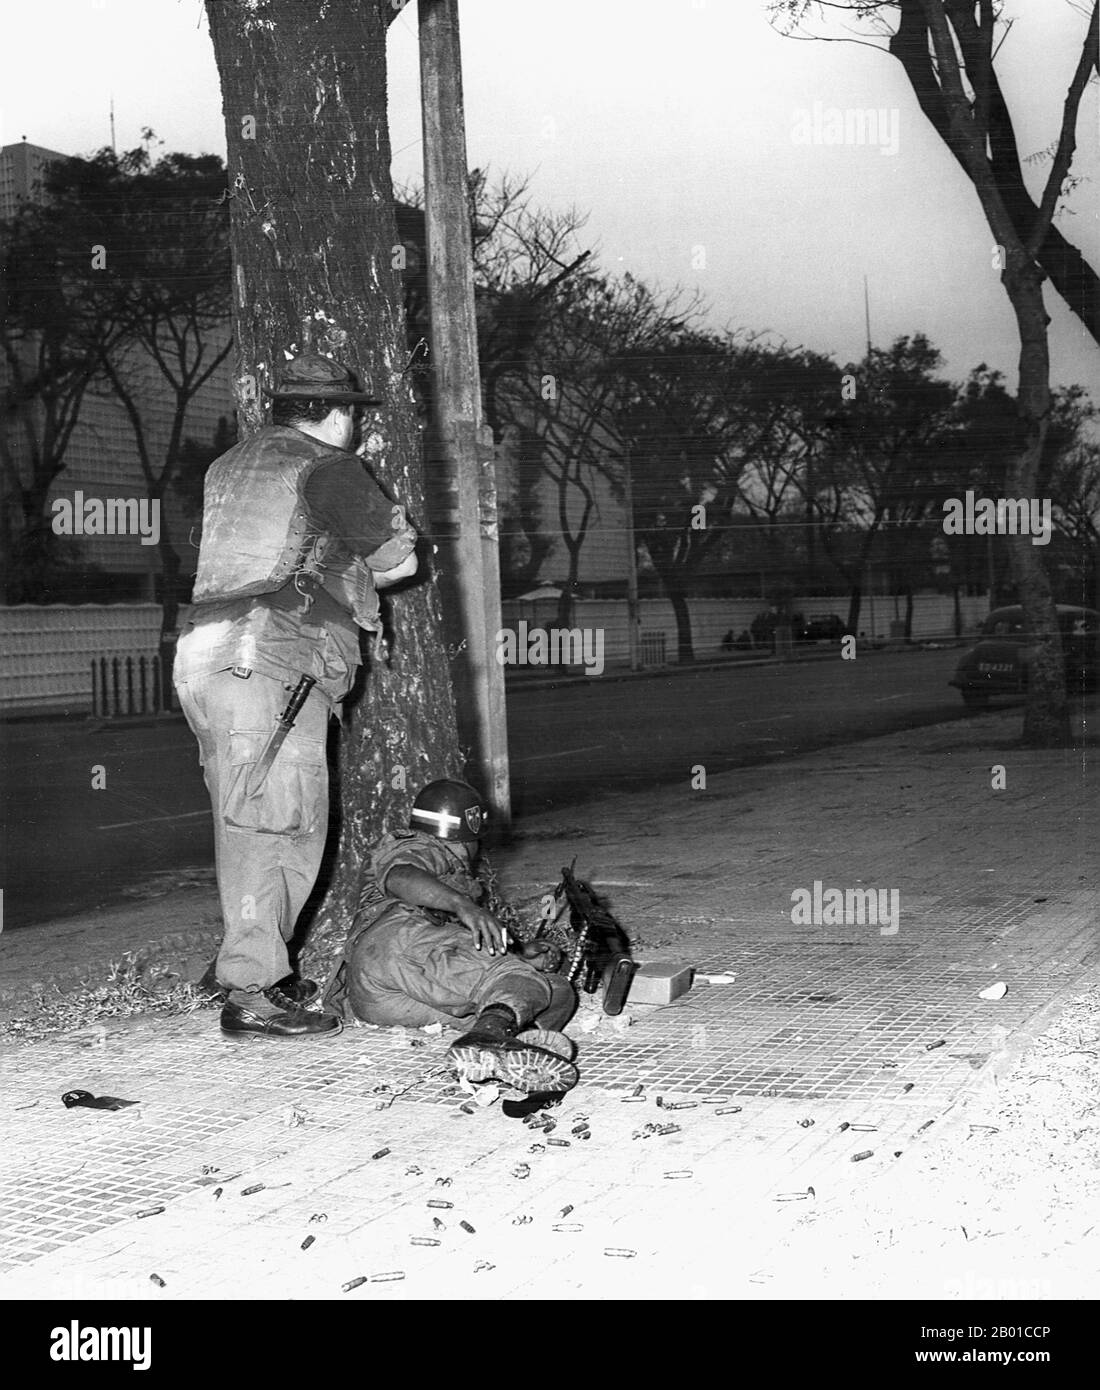 Vietnam: MILITÄRPOLIZEI DER US-Armee deckt sich vor der US-Botschaft, Saigon, am Thong Nhut Boulevard - Tet Offensive, 31. Januar 1968. Kurz nach Mitternacht am 31. Januar 1968 versammelten sich 19 Vietcong-Absapper des Elite-Bataillons C-10 Sapper in einem Vietcong-Sicherheitshaus in einer Autowerkstatt in der Phan Thanh Gian Straße 59, um Waffen zu verteilen und die letzten Vorbereitungen für den Angriff zu treffen. Um 02:47 Uhr blies der Vietcong ein kleines Loch in die Umfassungsmauer am Thong Nhut Boulevard und erhielt Zugang zum Botschaftsgelände. Stockfoto